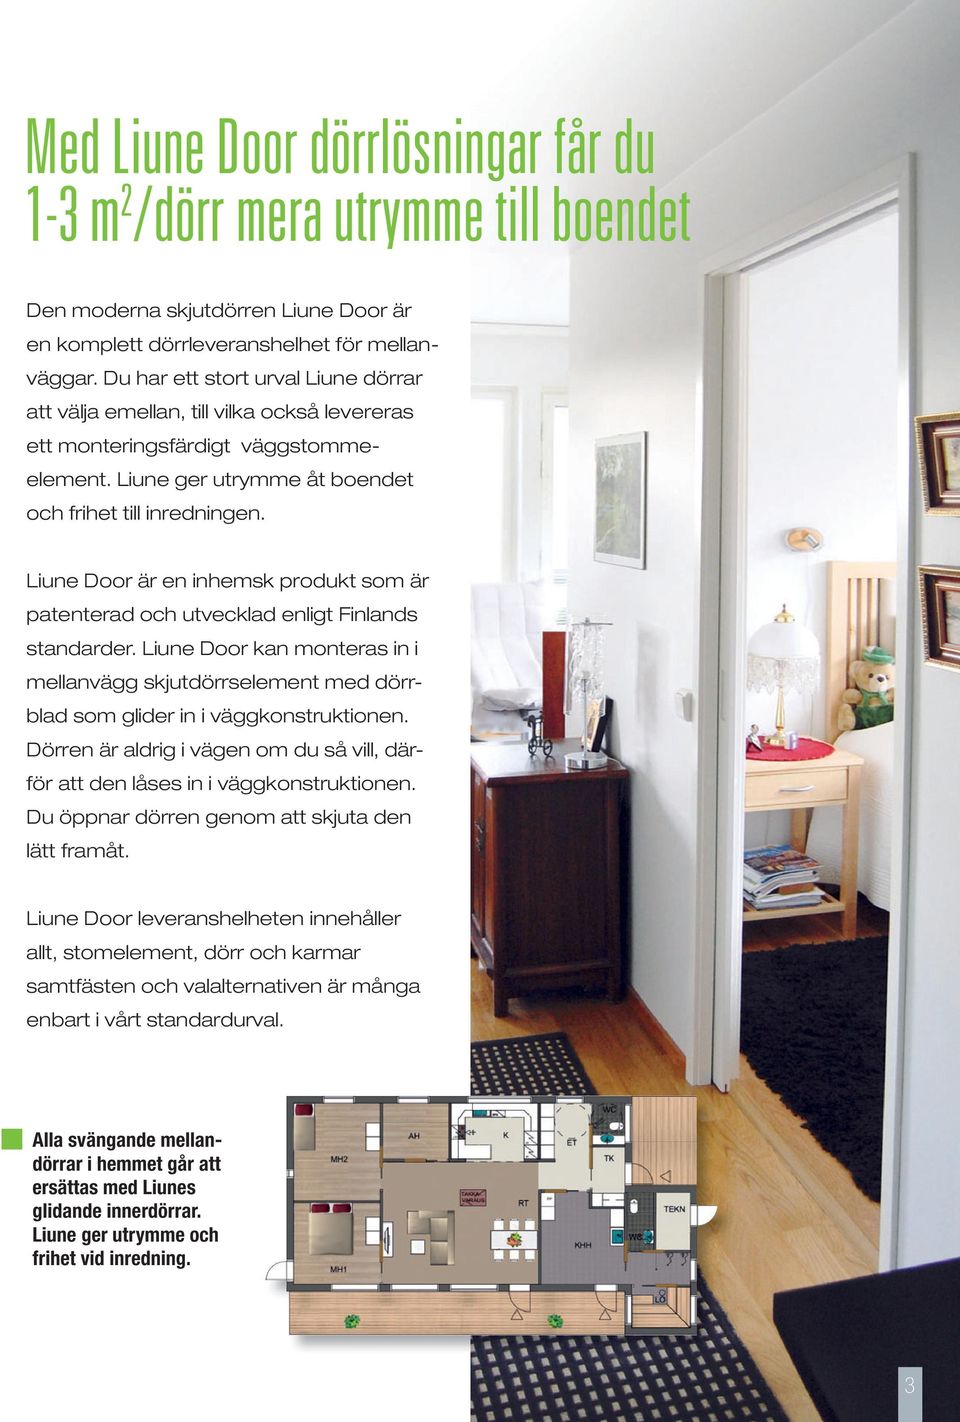 Liune Door är en inhemsk produkt som är patenterad och utvecklad enligt Finlands standarder. Liune Door kan monteras in i mellanvägg skjutdörrselement med dörrblad som glider in i väggkonstruktionen.